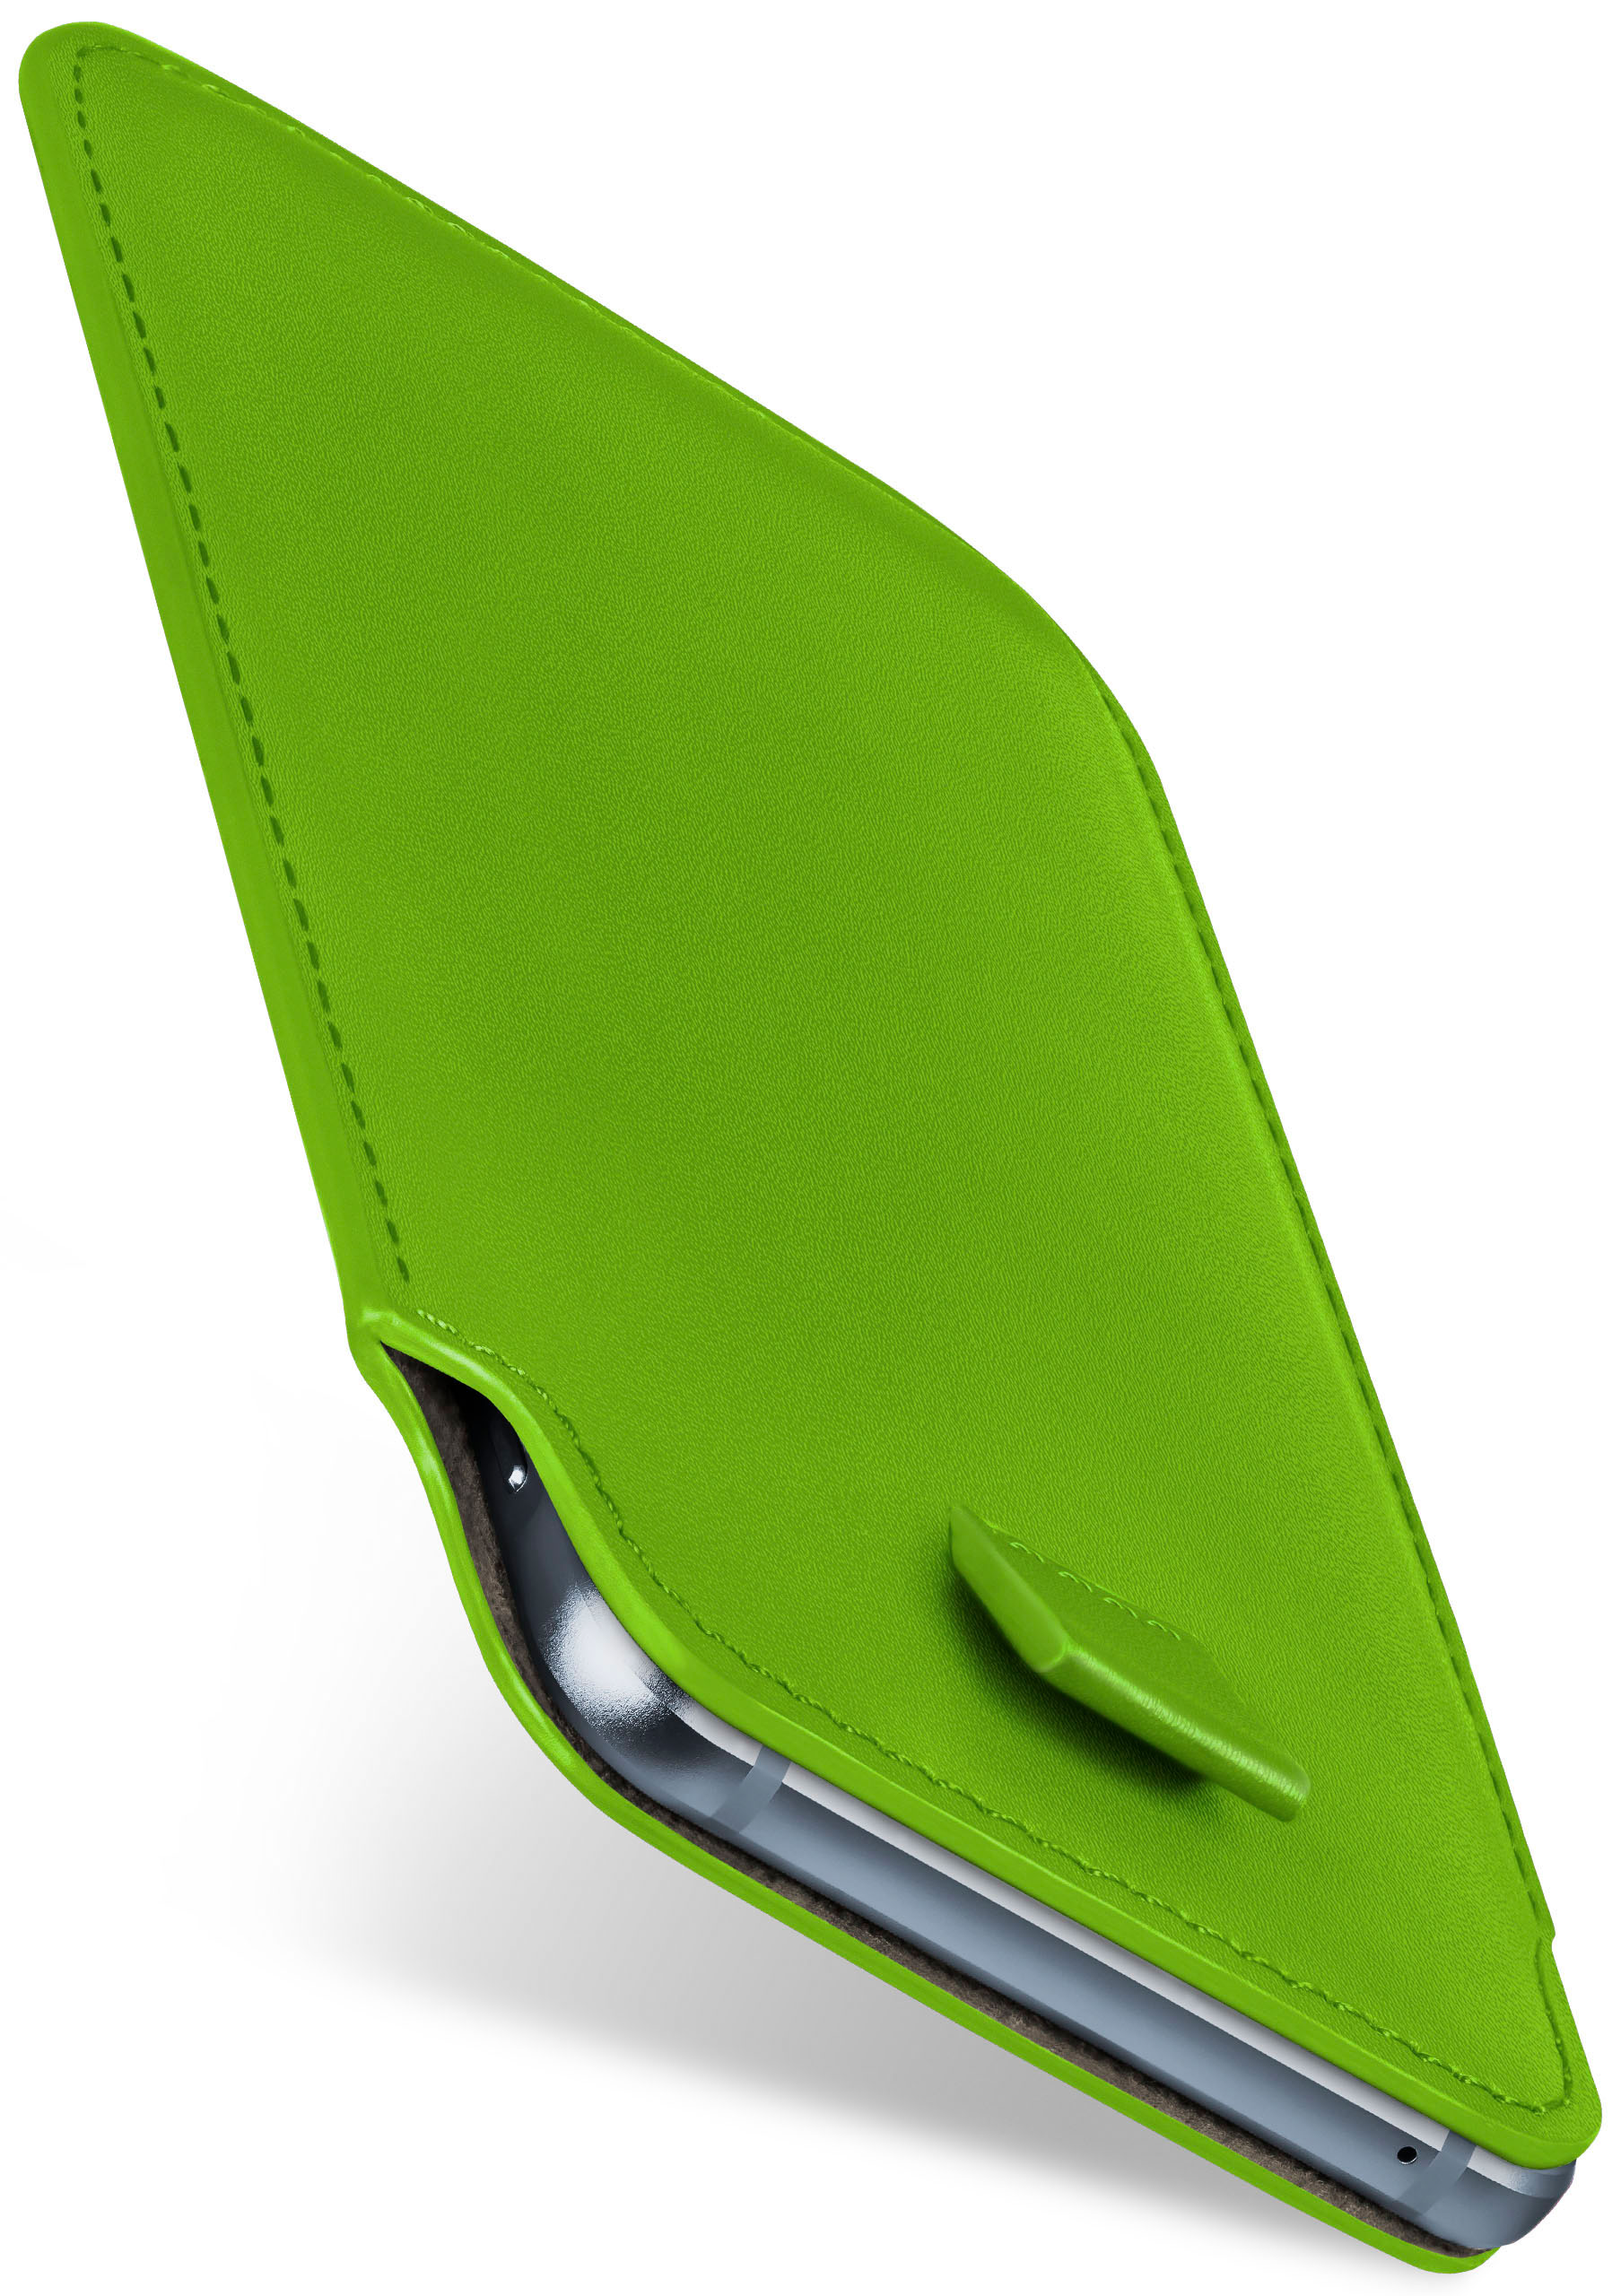 Full MOEX Moto Slide Case, Z3 Play, / Lenovo, Lime-Green Cover, Z3